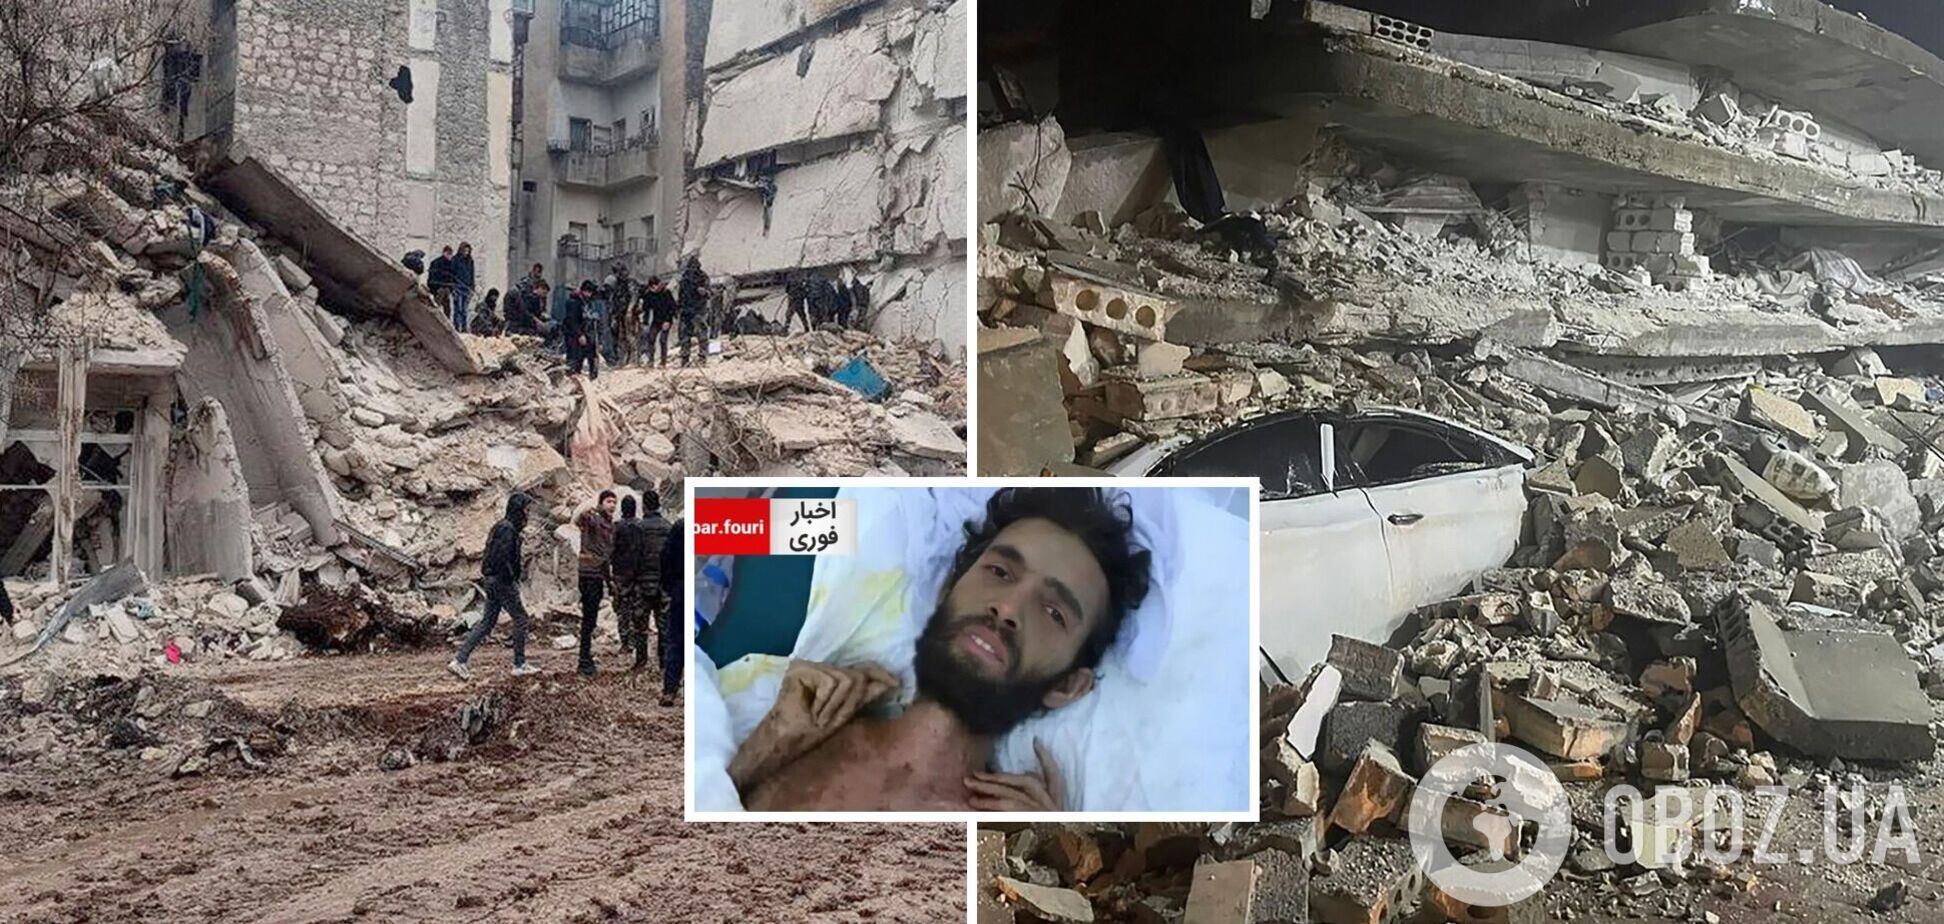 В Сирии спустя 3 месяца после землетрясения из-под завалов достали живого мужчину. Фото